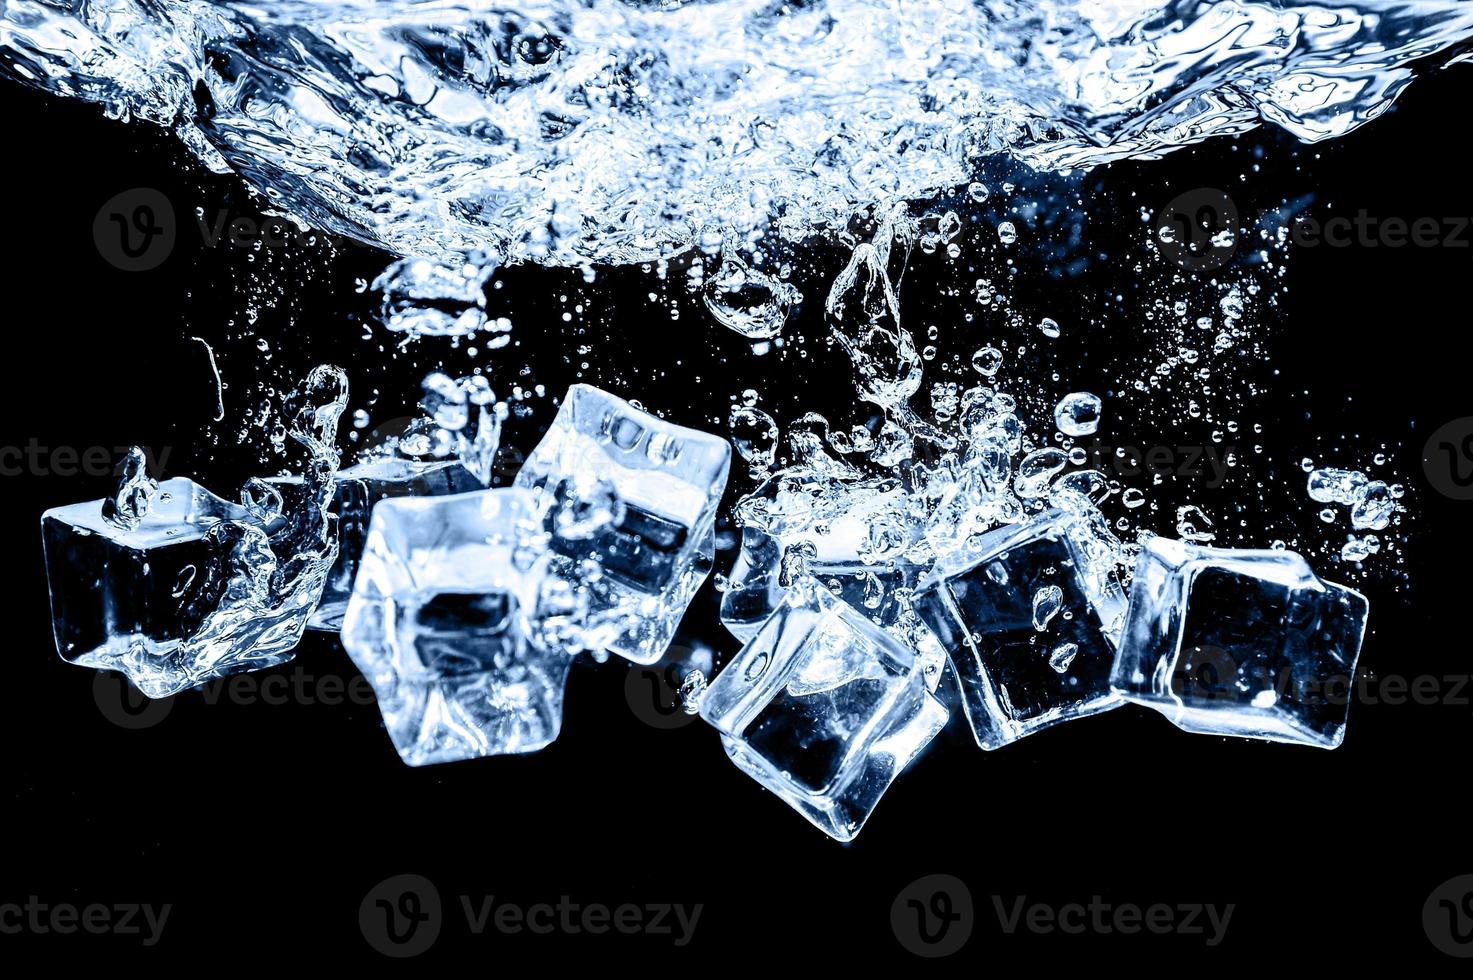 cubetti di ghiaccio in acqua su sfondo scuro dello studio. il concetto di freschezza con la freschezza dei cubetti di ghiaccio. foto